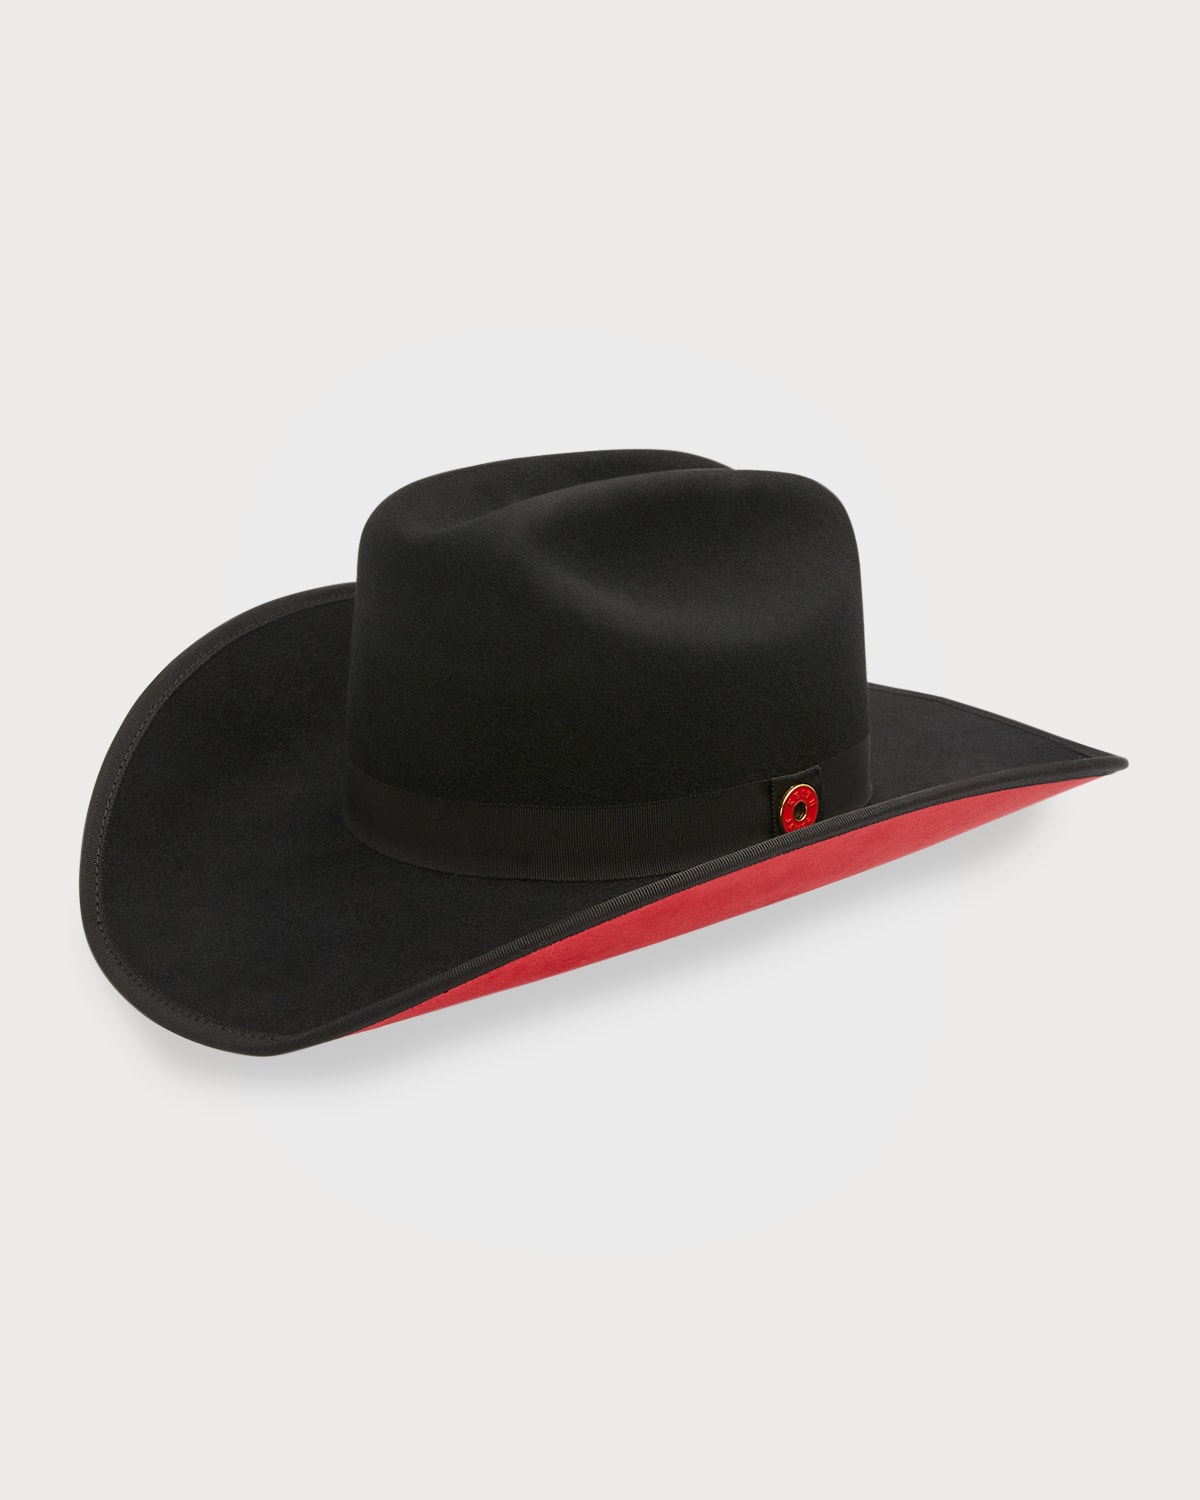 Keith James Men's Wool Western Hat In Jet Black